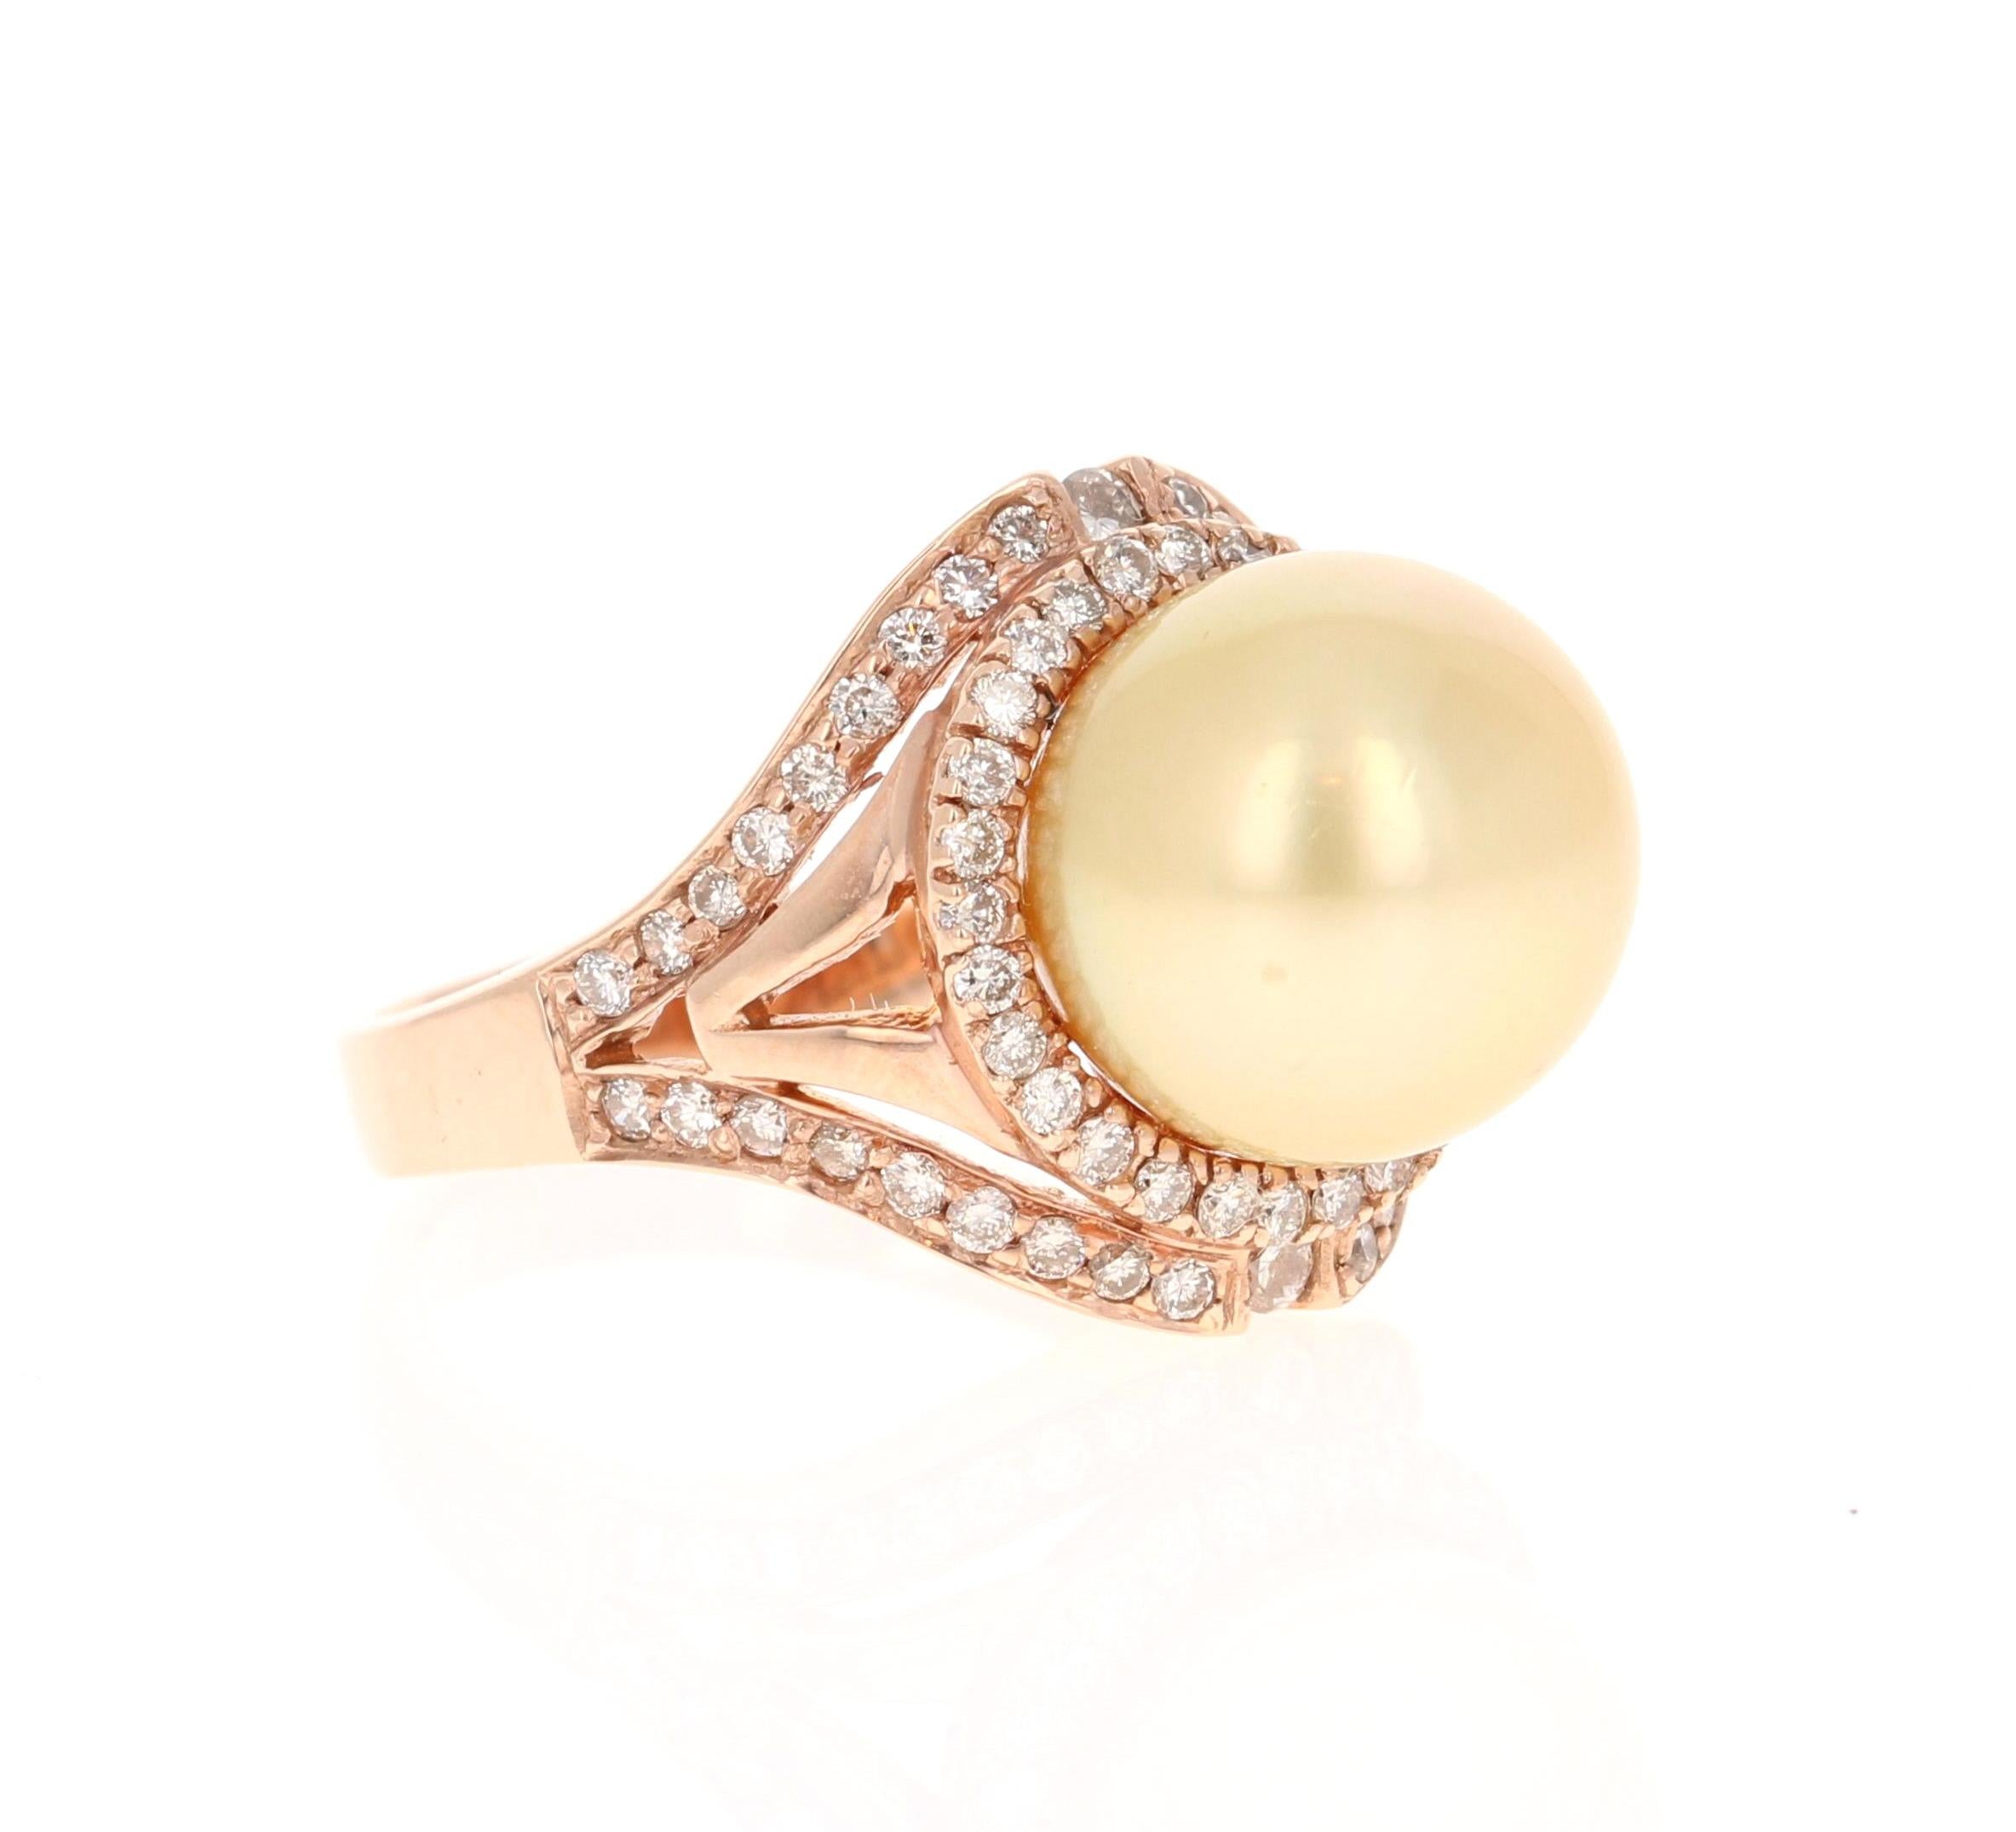 Cette magnifique bague en diamant et perle des mers du Sud comporte une perle dorée des mers du Sud de 11,5 mm et est entourée de 66 diamants de taille ronde pesant 0,69 carat. (Clarté : VS, Couleur : F)

La magnifique monture pèse environ 6,9